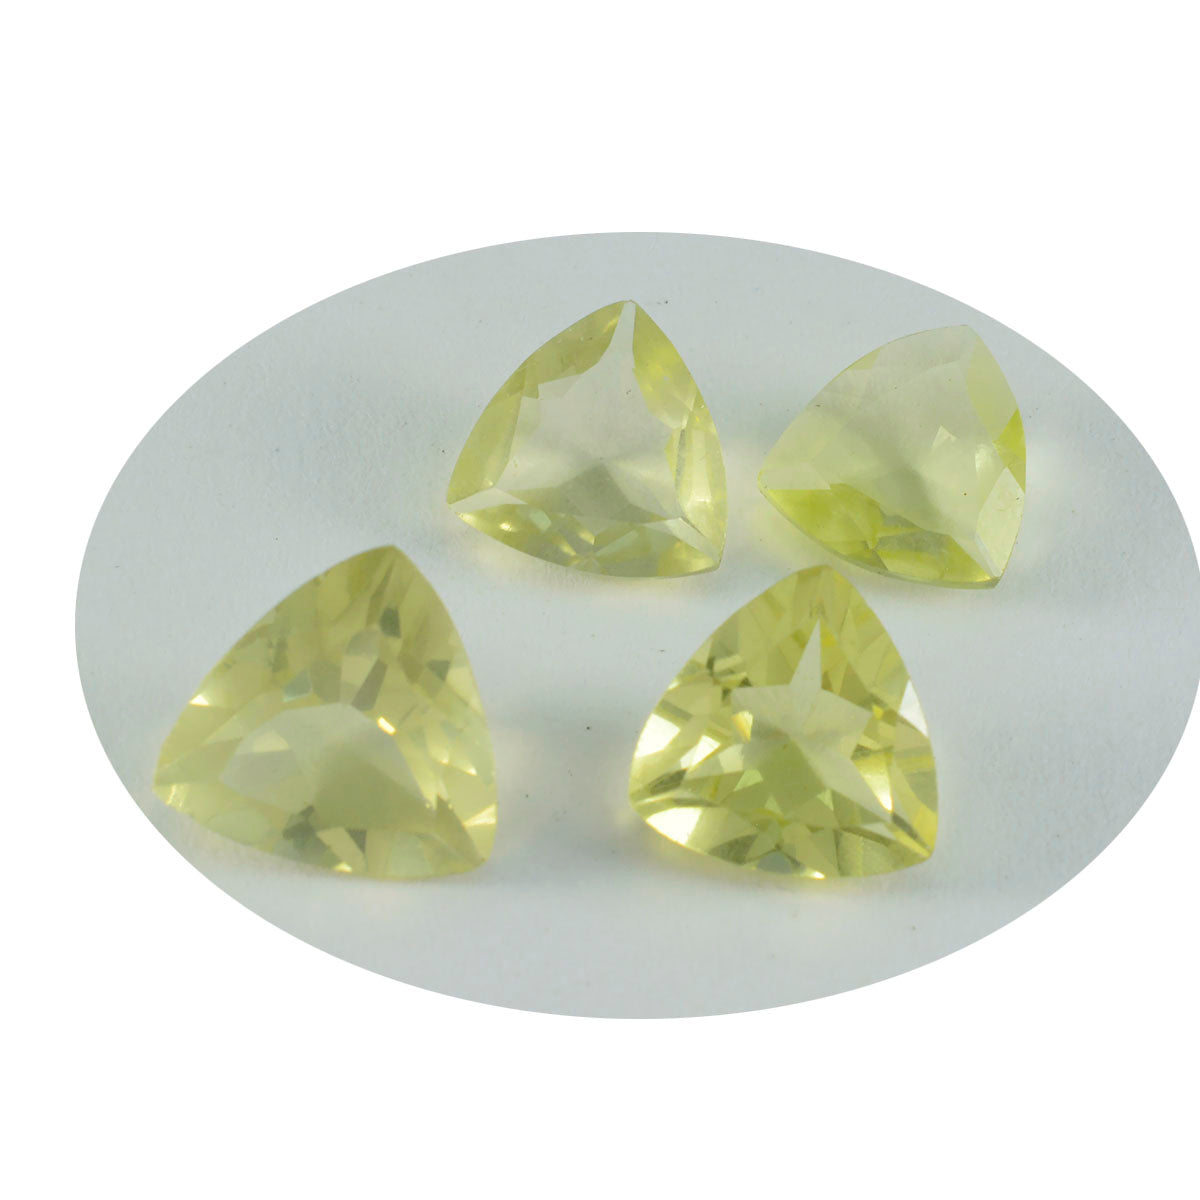 Riyogems 1pc quartz citron jaune à facettes 7x7mm forme trillion qualité étonnante gemme en vrac